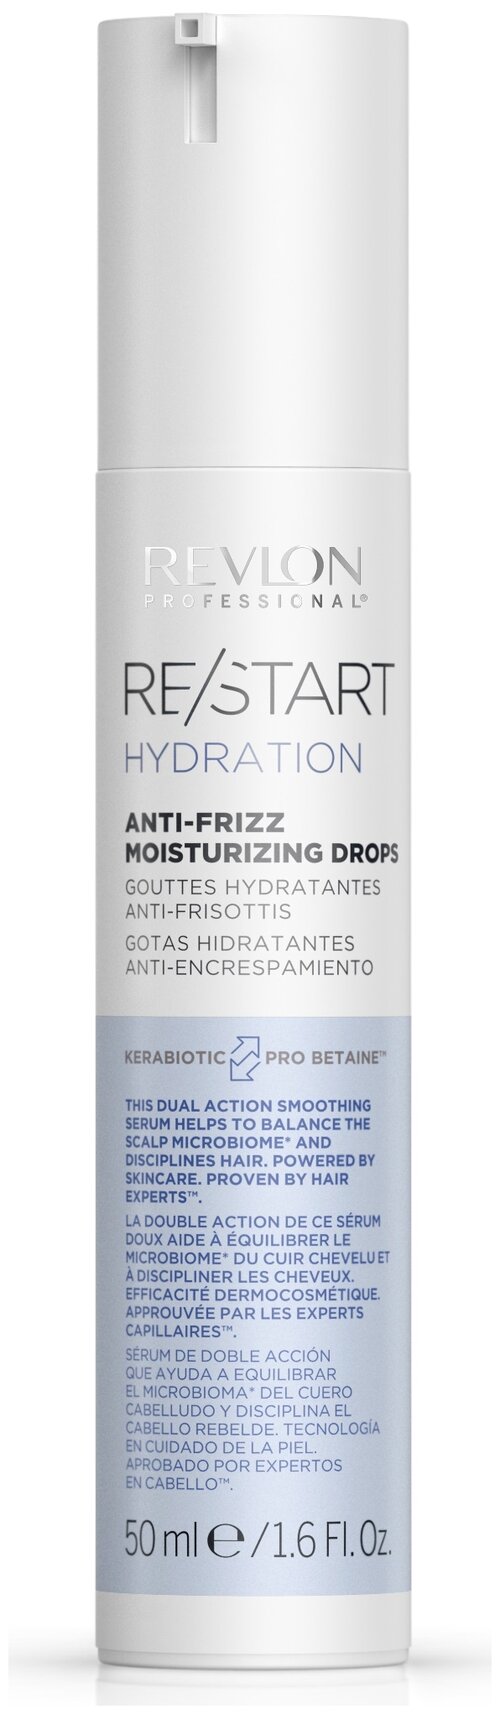 Revlon Professional Restart Капли увлажняющие для смягчения волос Anti-frizz Moisturizing Drops, 90 г, 50 мл, бутылка